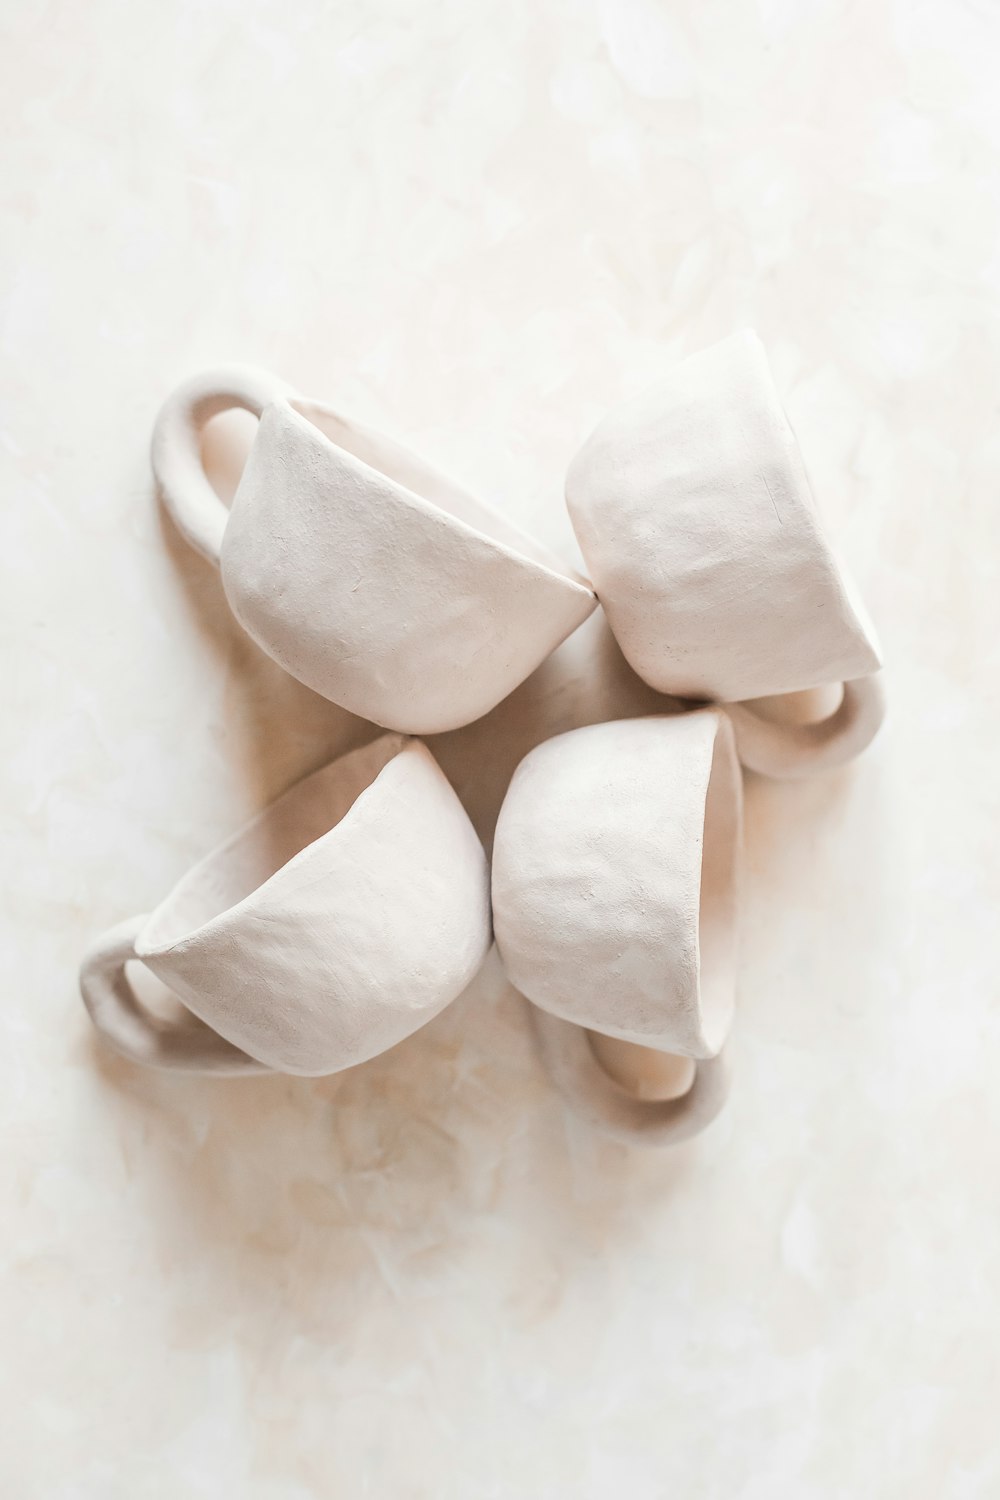 white heart shaped ceramic mug